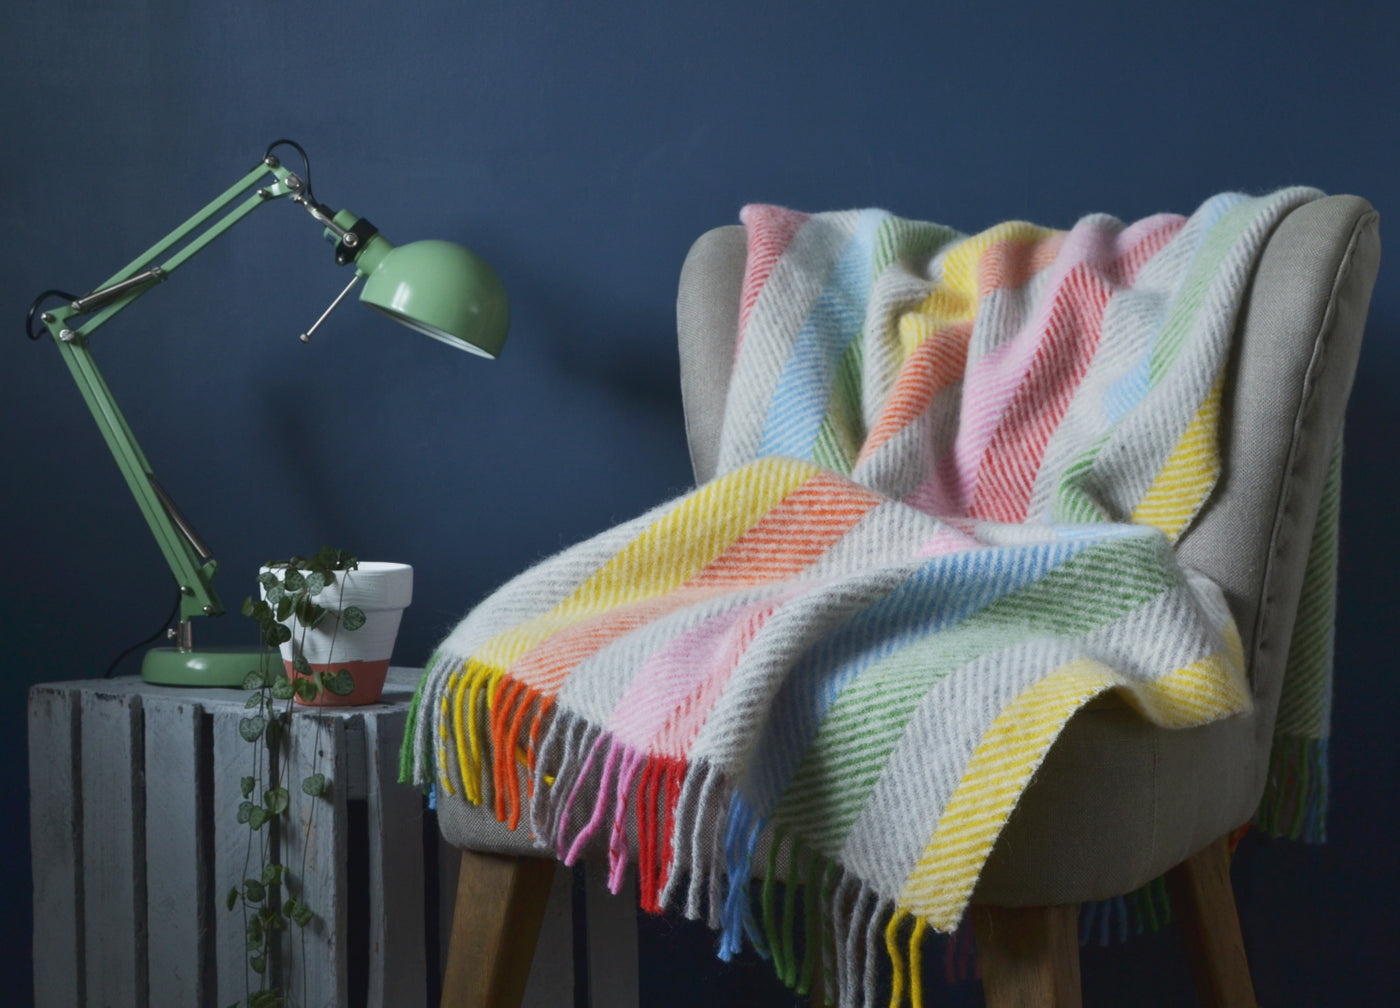 Rainbow stripe herringbone wool blanket draped over a lounge chair